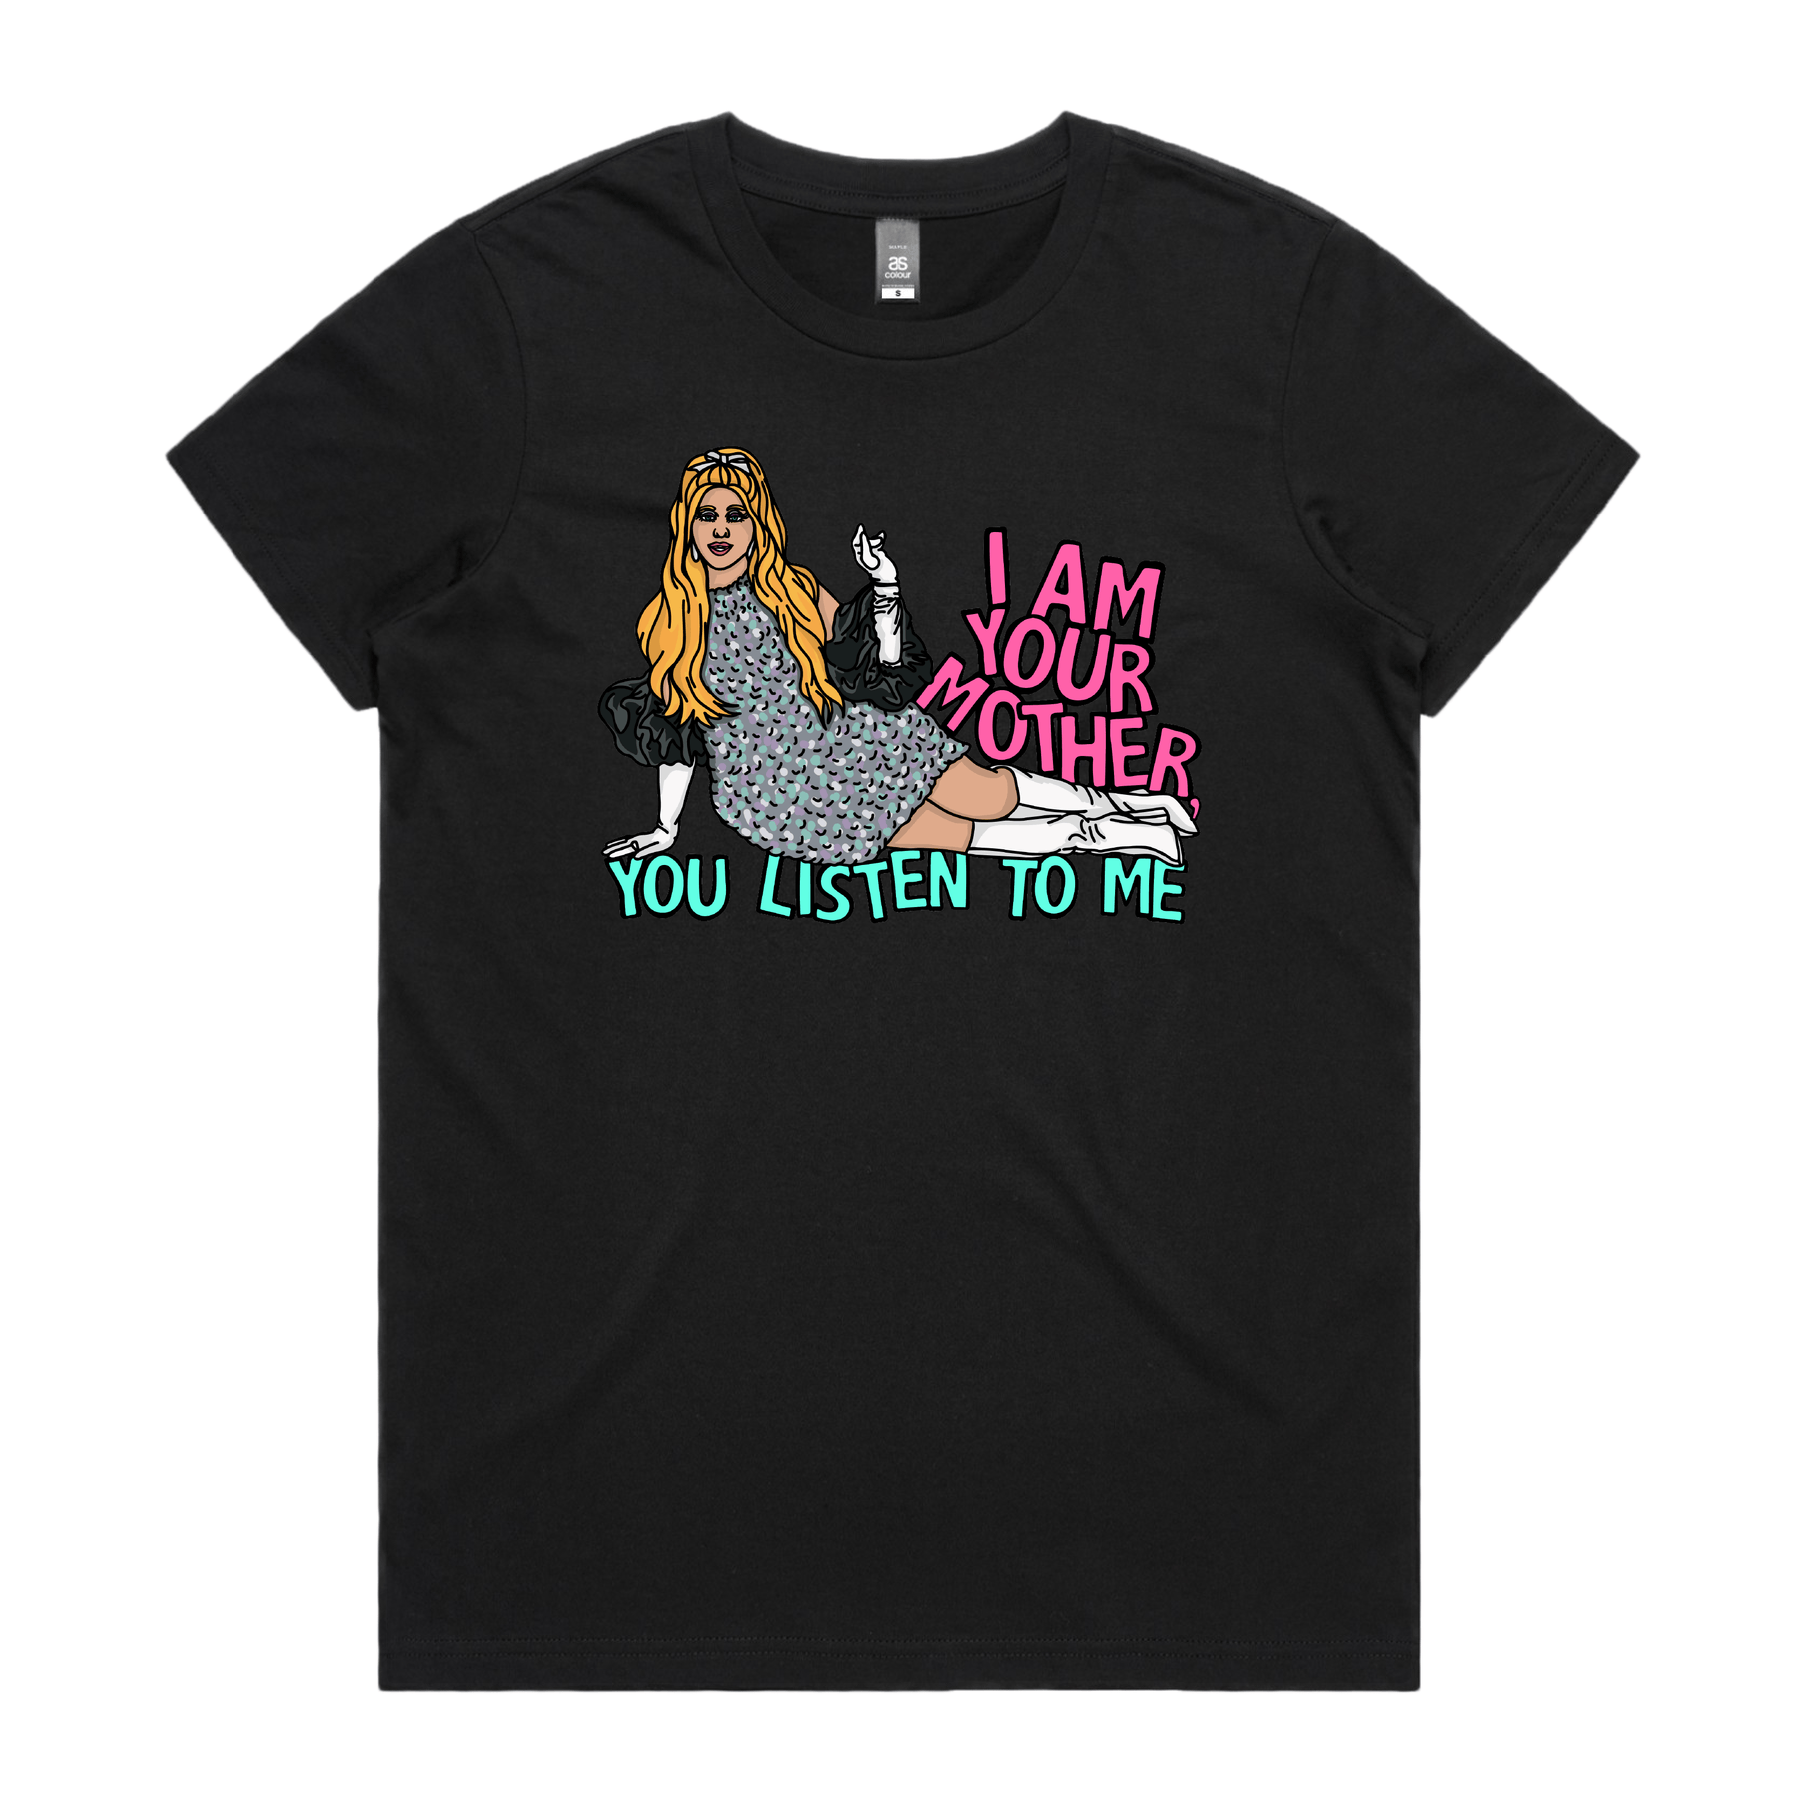 You Listen To Me 🎤🎶 - Women's T Shirt